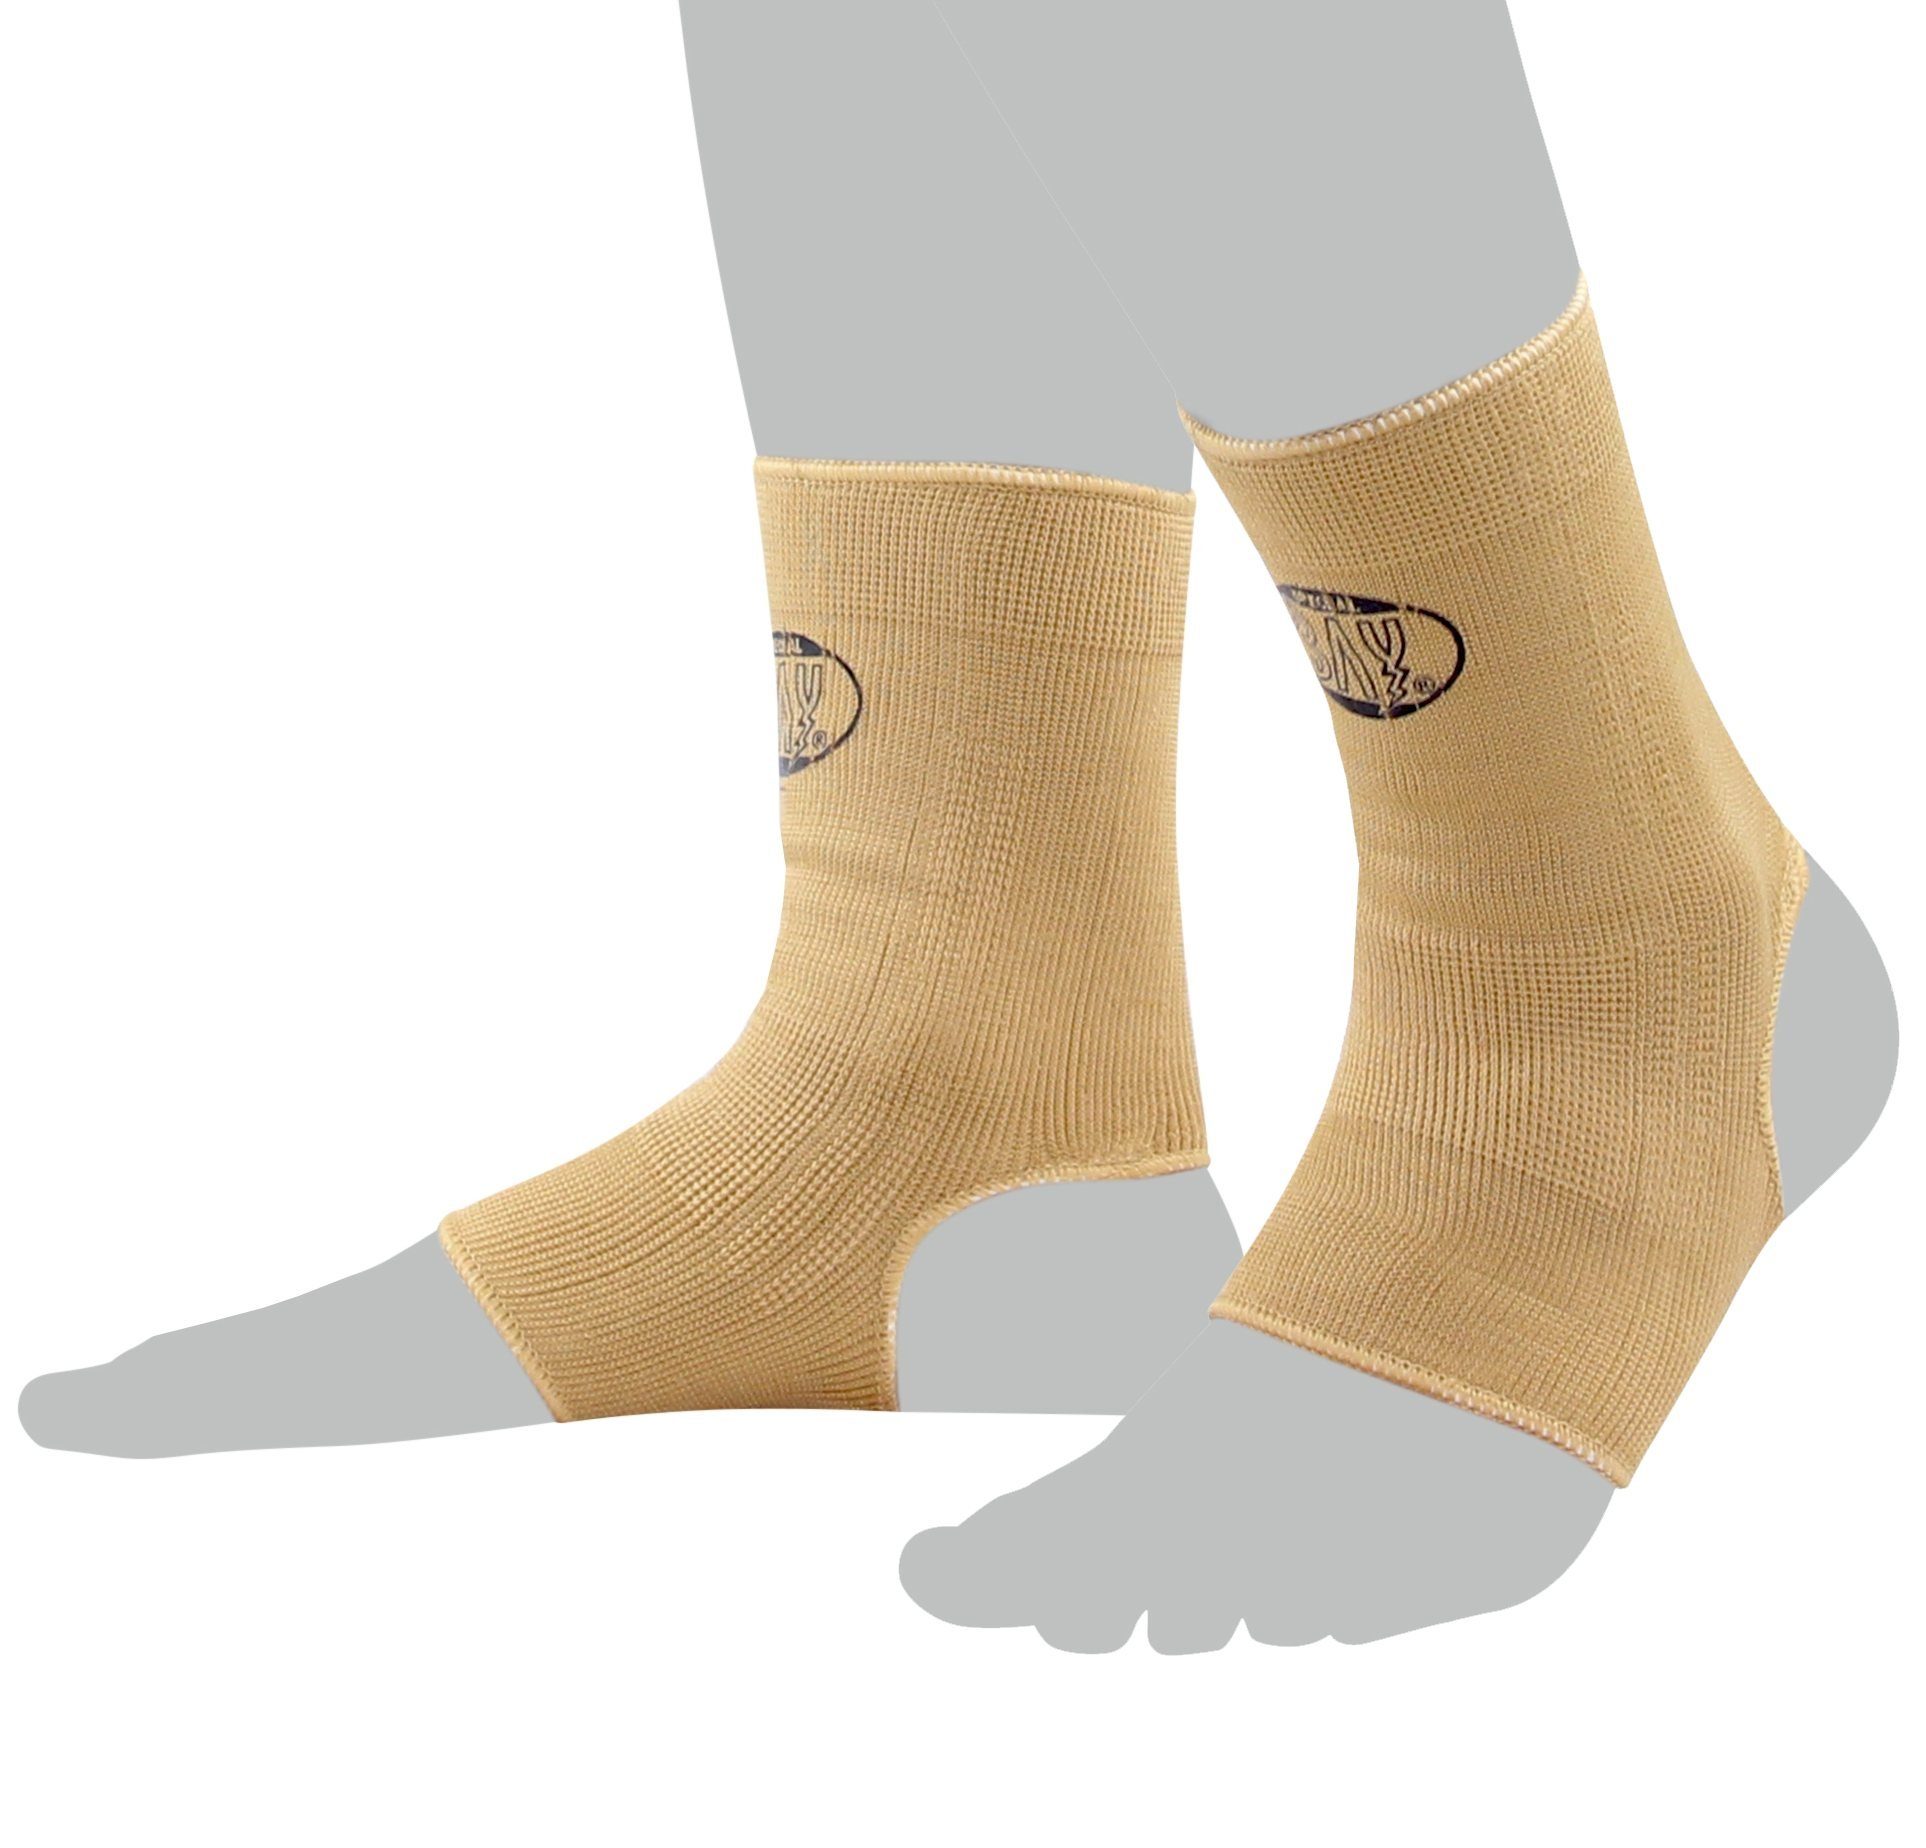 BAY-Sports Fußbandage Knöchelbandage Fußgelenkbandage Sprunggelenk Paar, Anatomische Passform, kann rechts und links getragen werden, Kompression, XS - XL